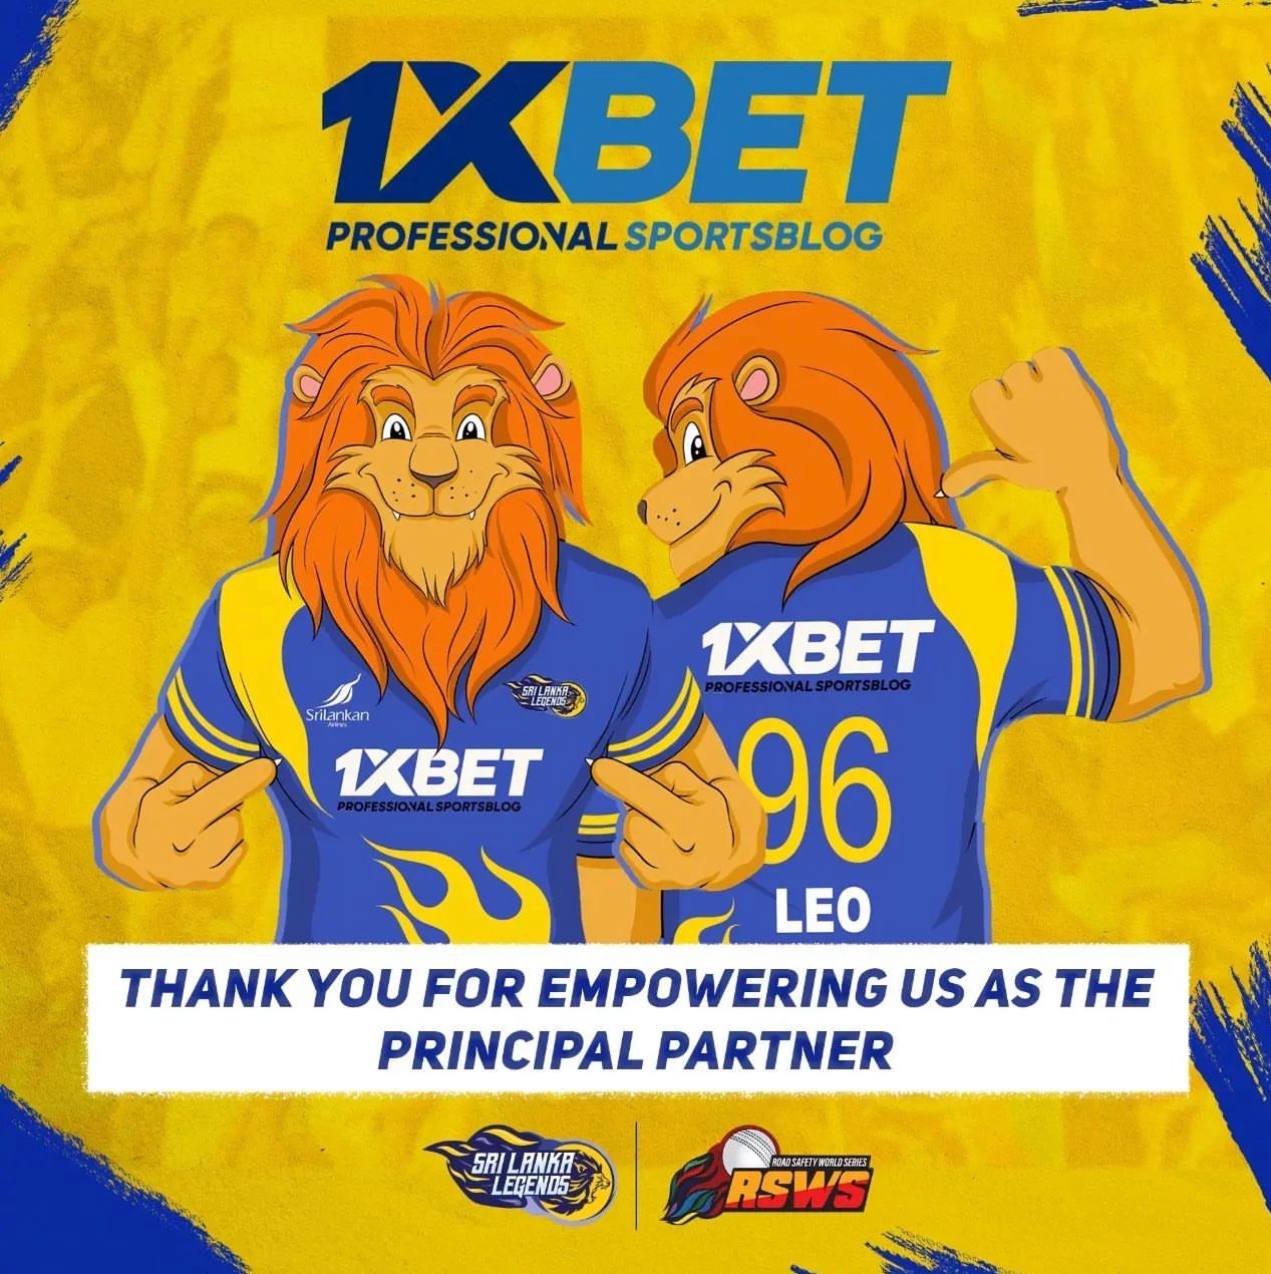 1xBet Sportsblog became a principal sponsor of Sri Lanka Legends